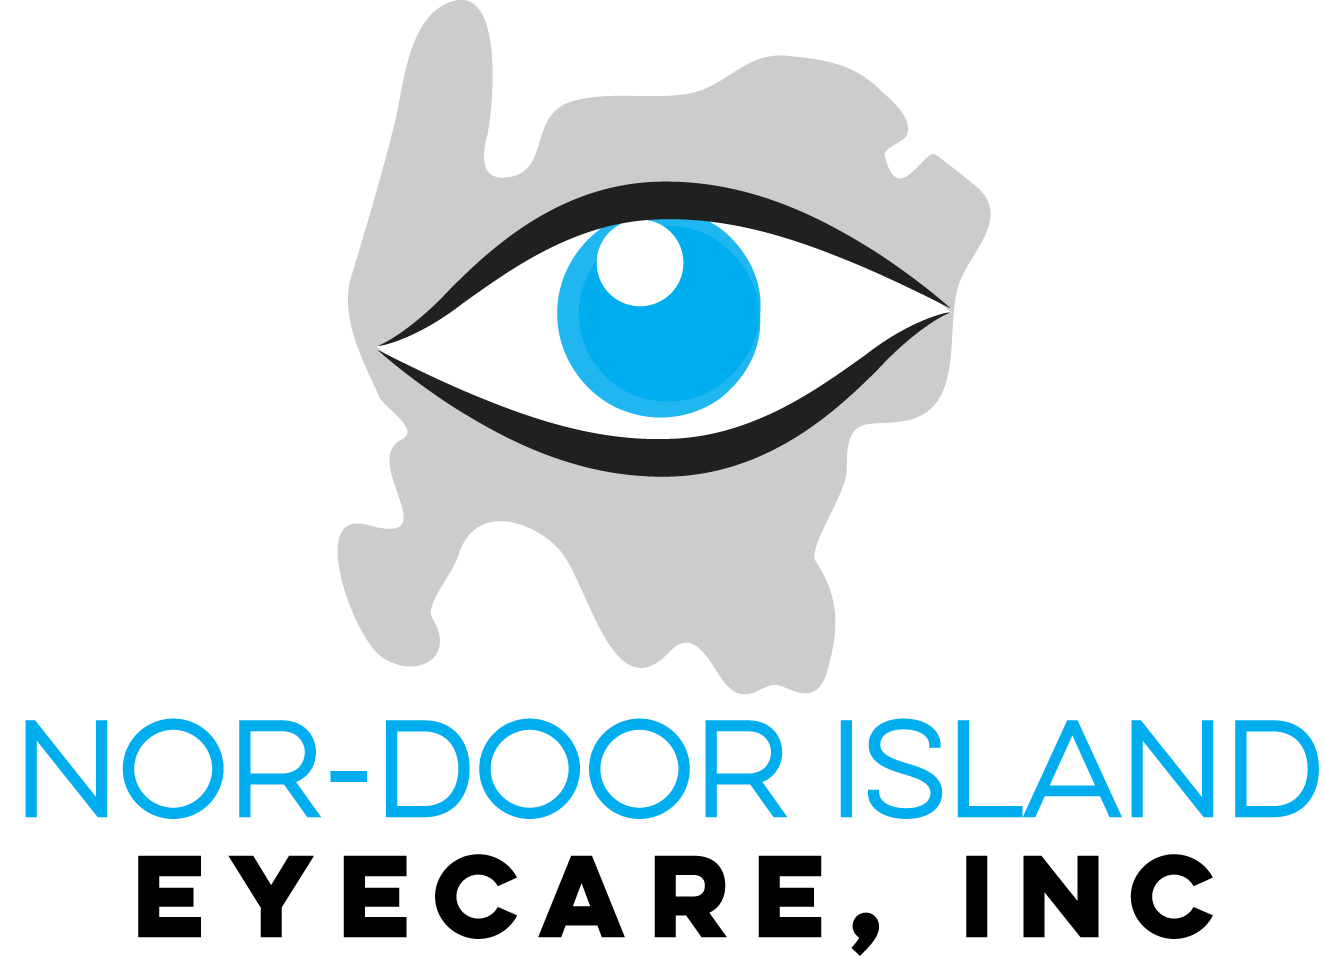 Nor-Door Island Eyecare